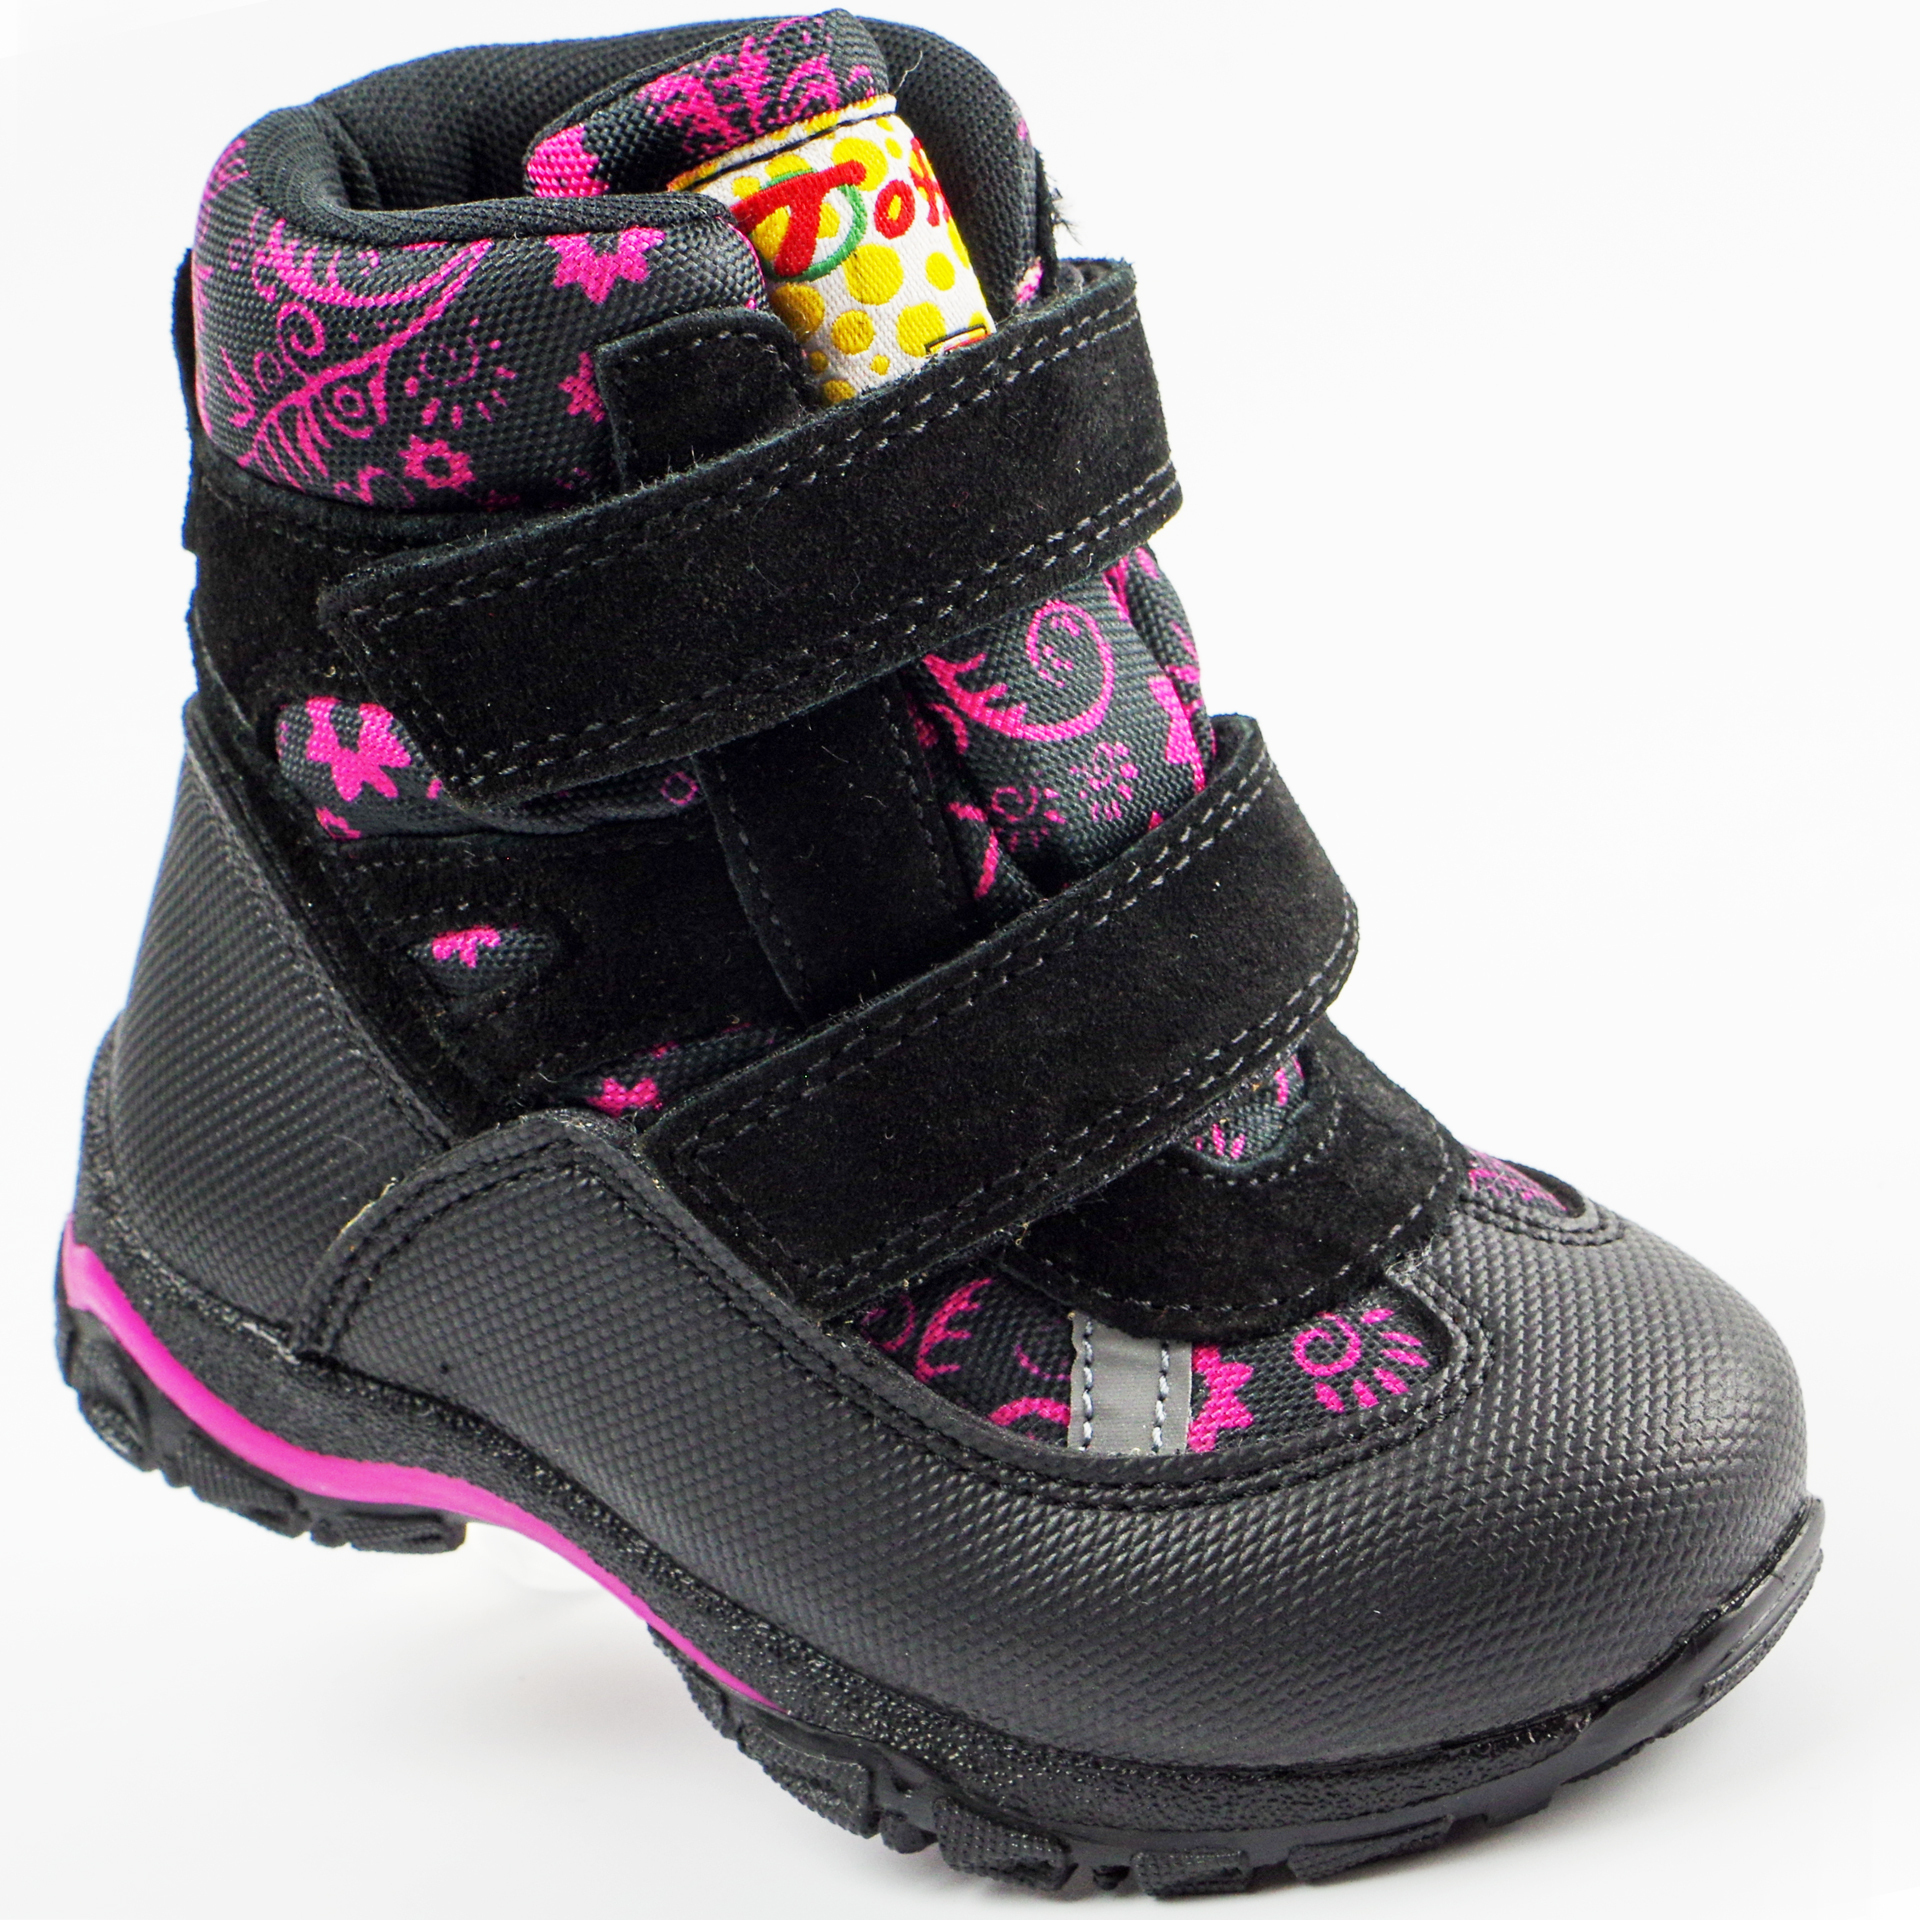 Мембранные зимние ботинки (2150) материал Мембрана, цвет Черный  для девочки 22-25 размеры – Sole Kids, Днепр. Фото 1